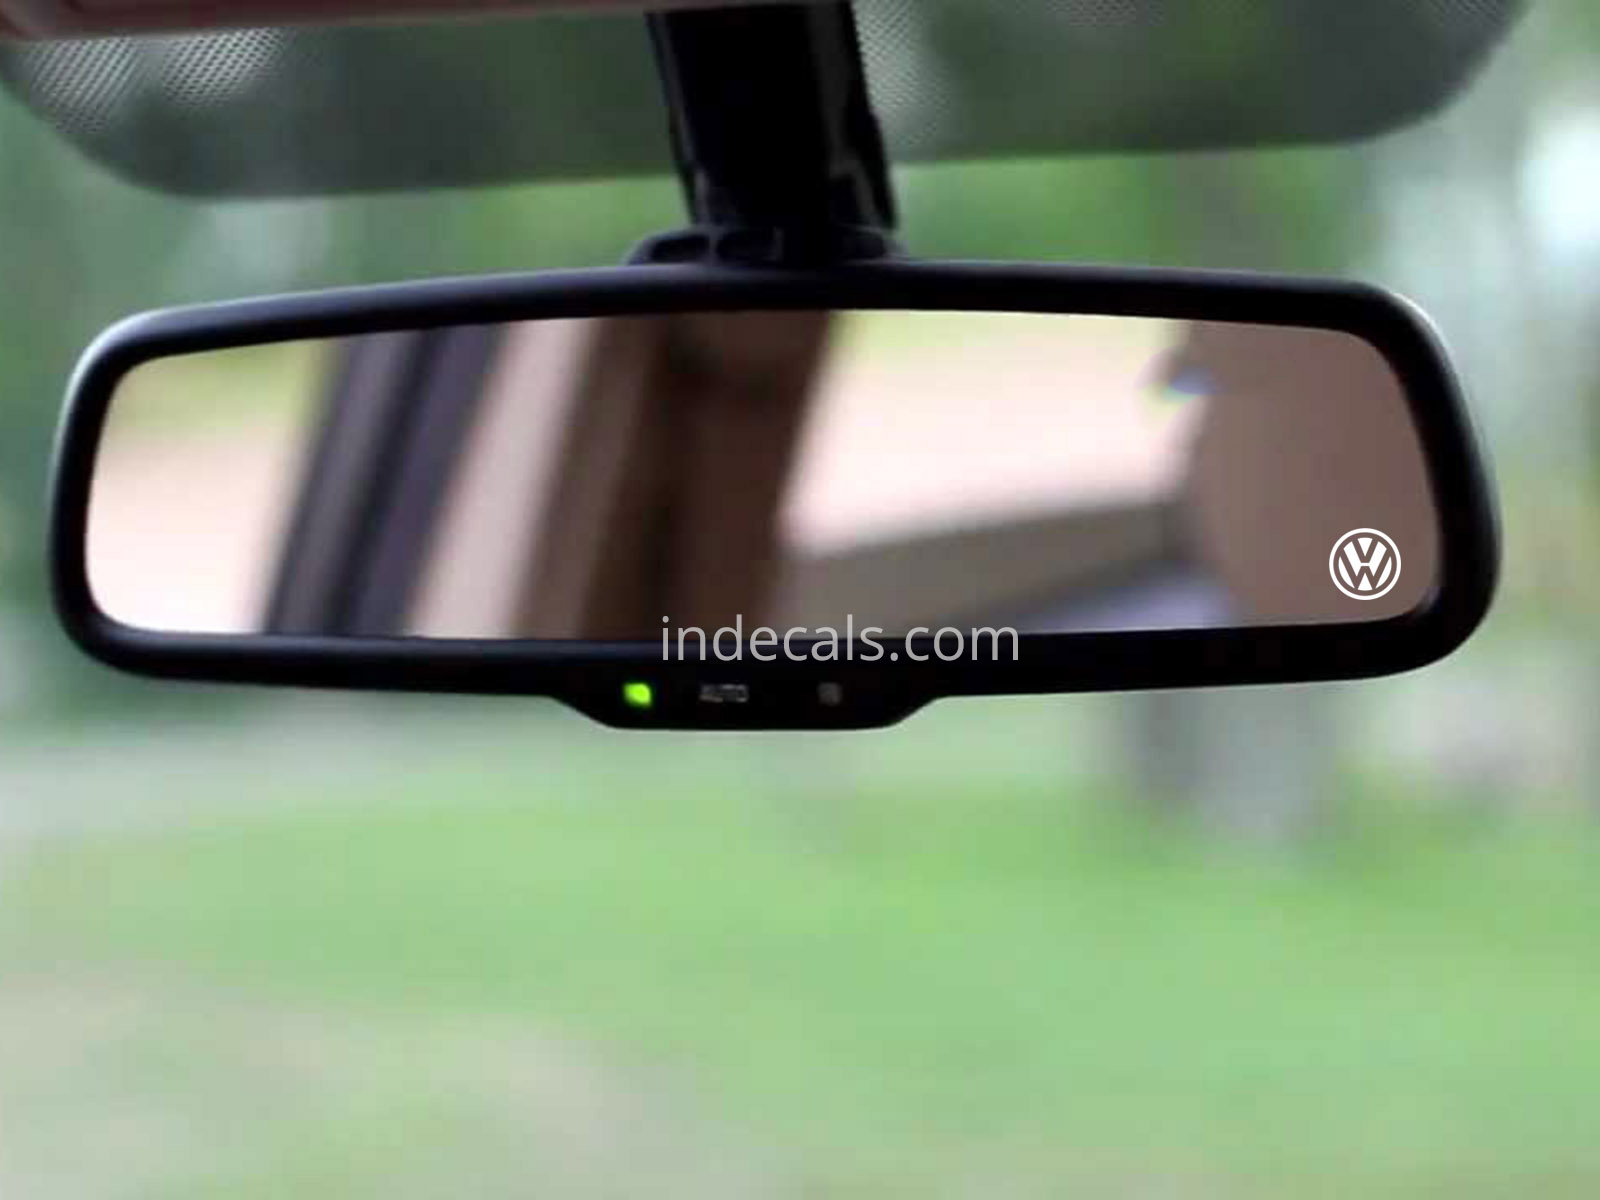 3 x Volkswagen Stickers for Interior Mirror - White